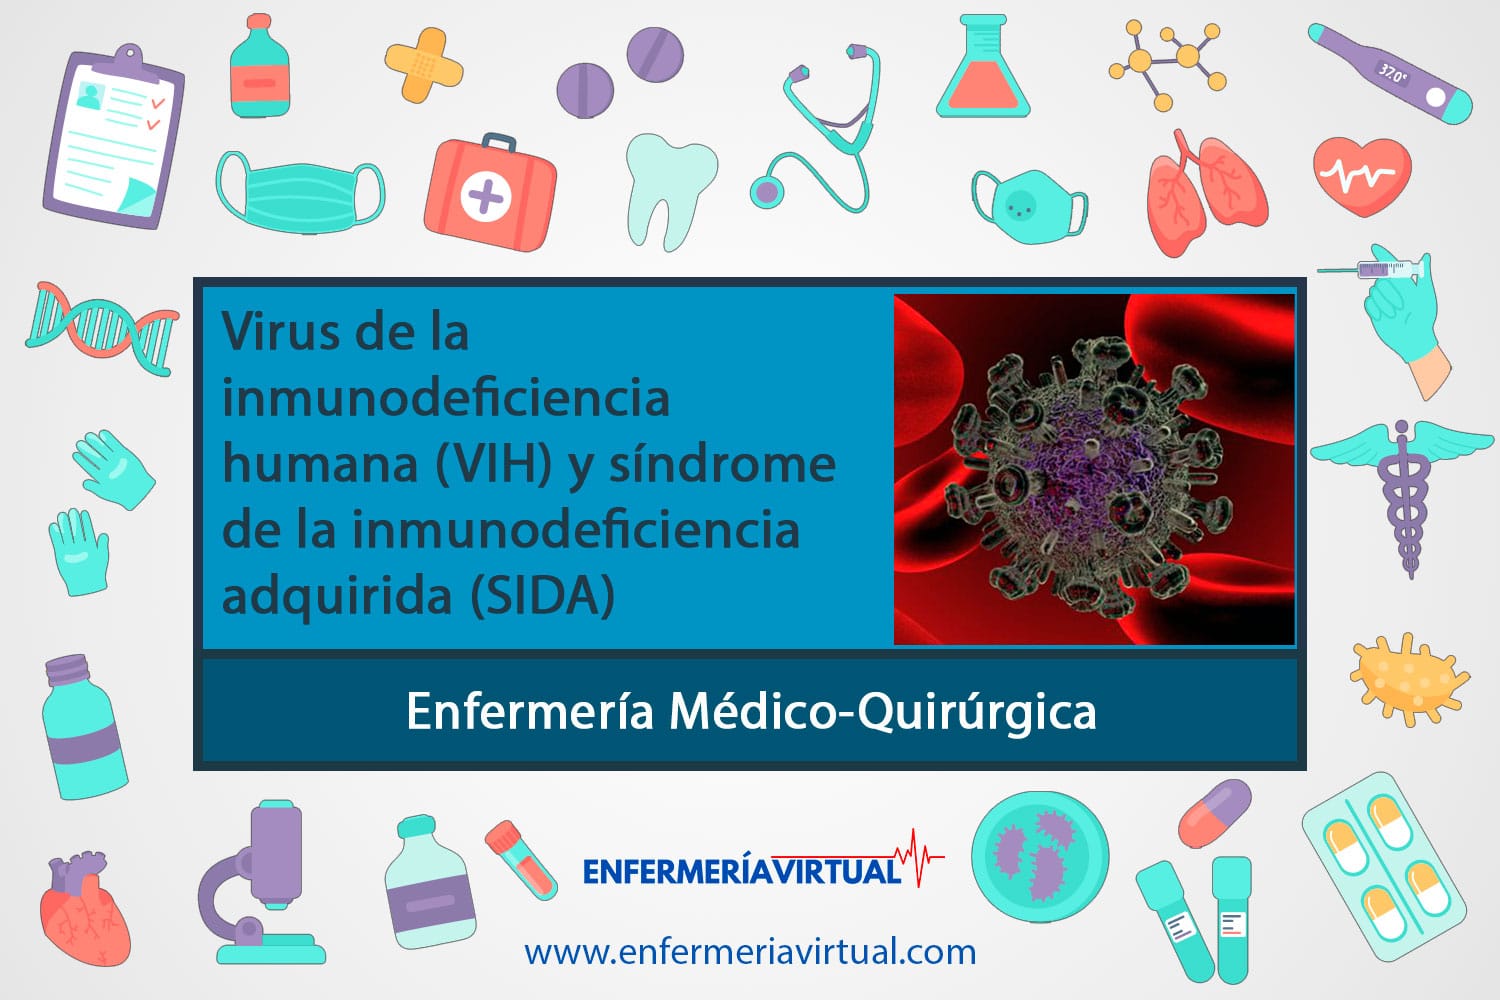 Virus de la inmunodeficiencia humana (VIH) y síndrome de inmunodeficiencia adquirida (SIDA)